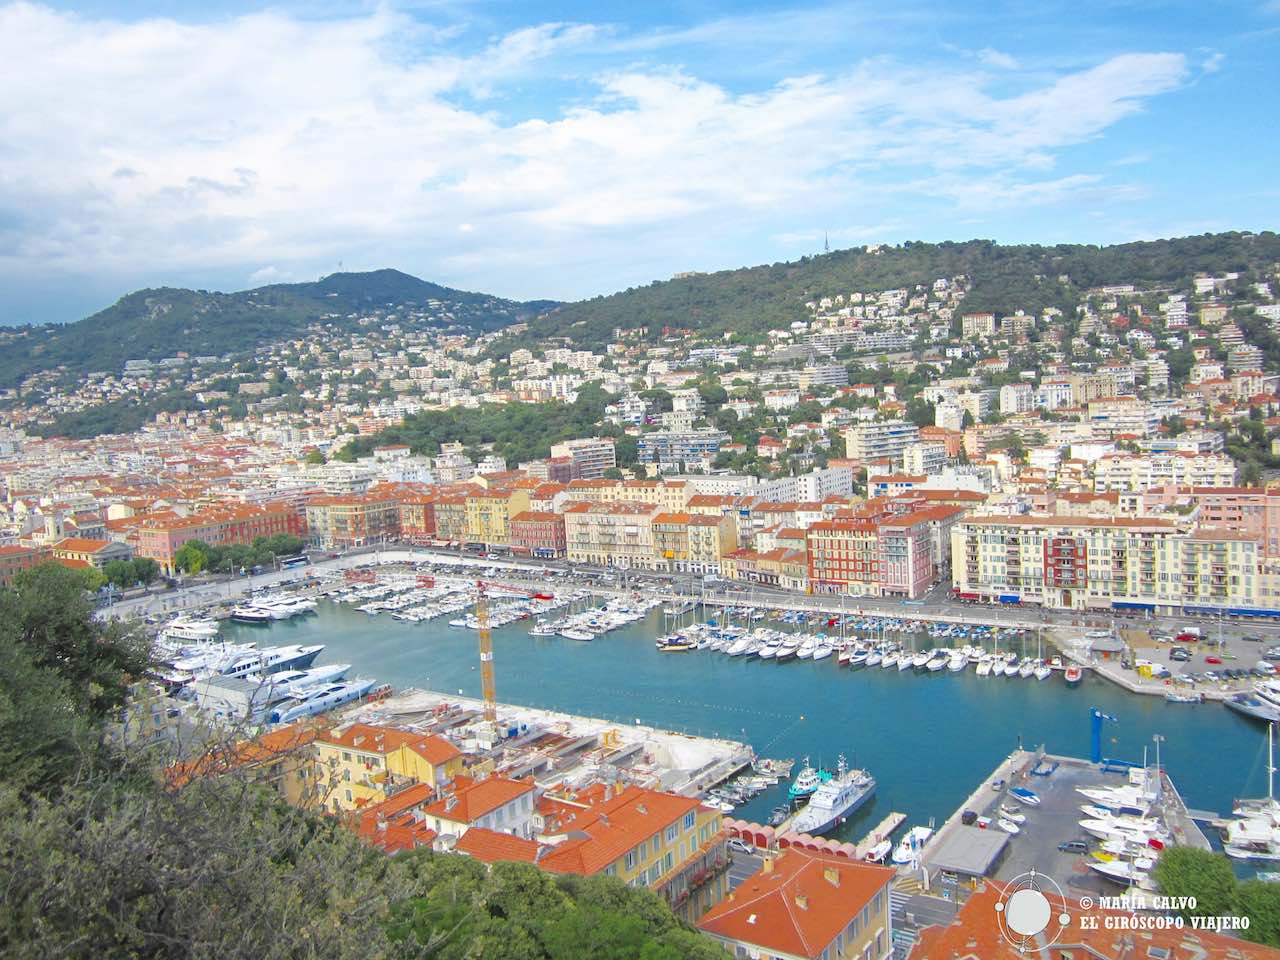 El Puerto de Niza y su célebre barrio